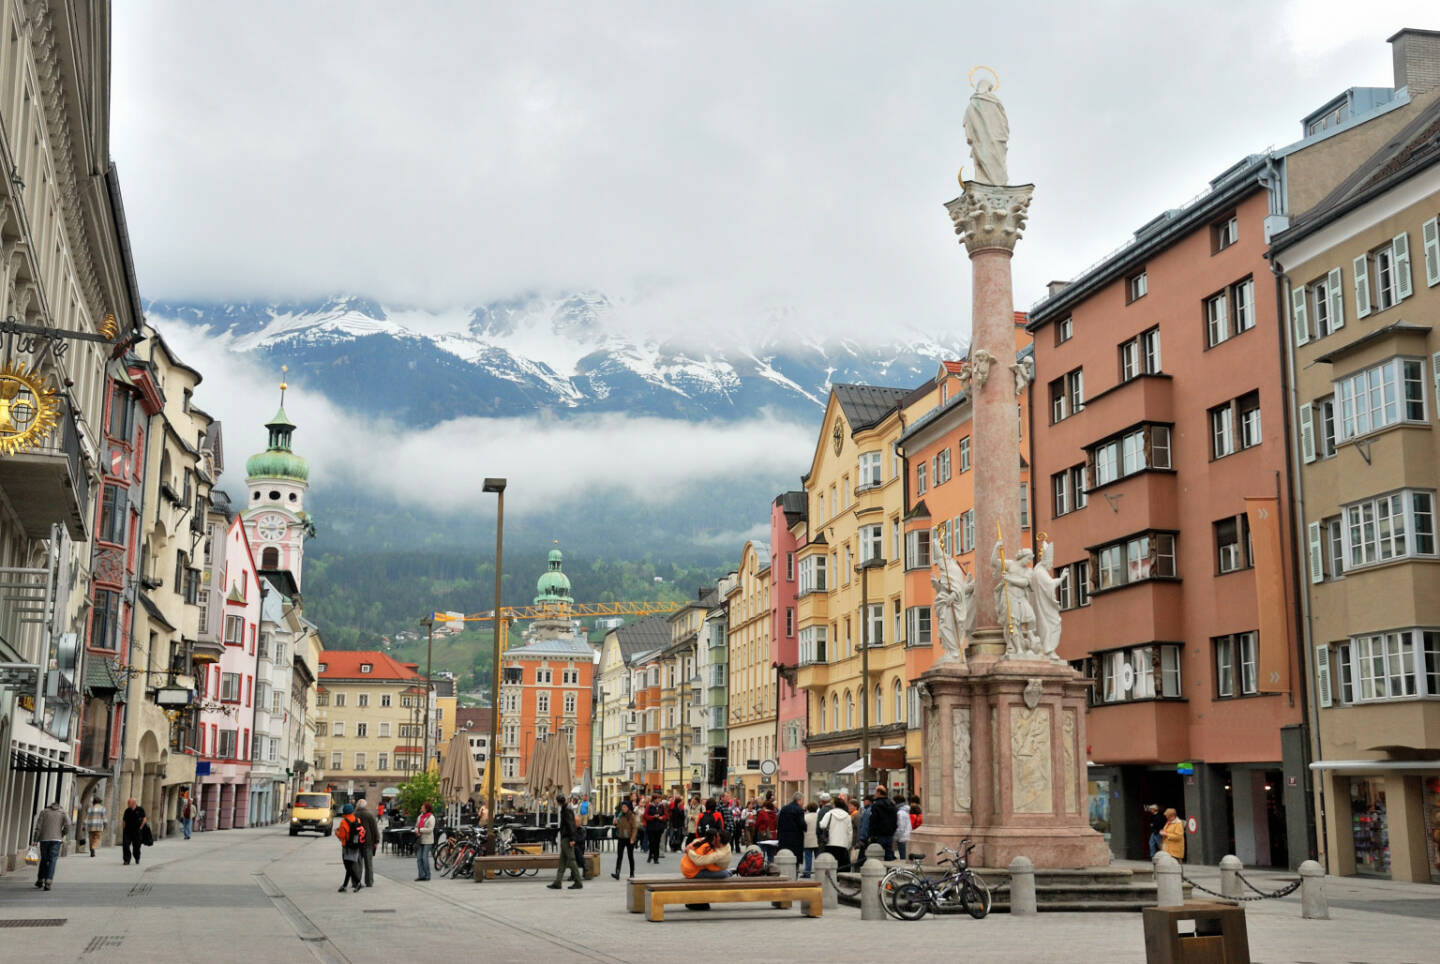 Innsbruck, Tirol, Nordkette, Pestsäule, http://www.shutterstock.com/de/pic-129593015/stock-photo-townscape-of-innsbruck-switzerland.html (Bild: www.shutterstock.com)